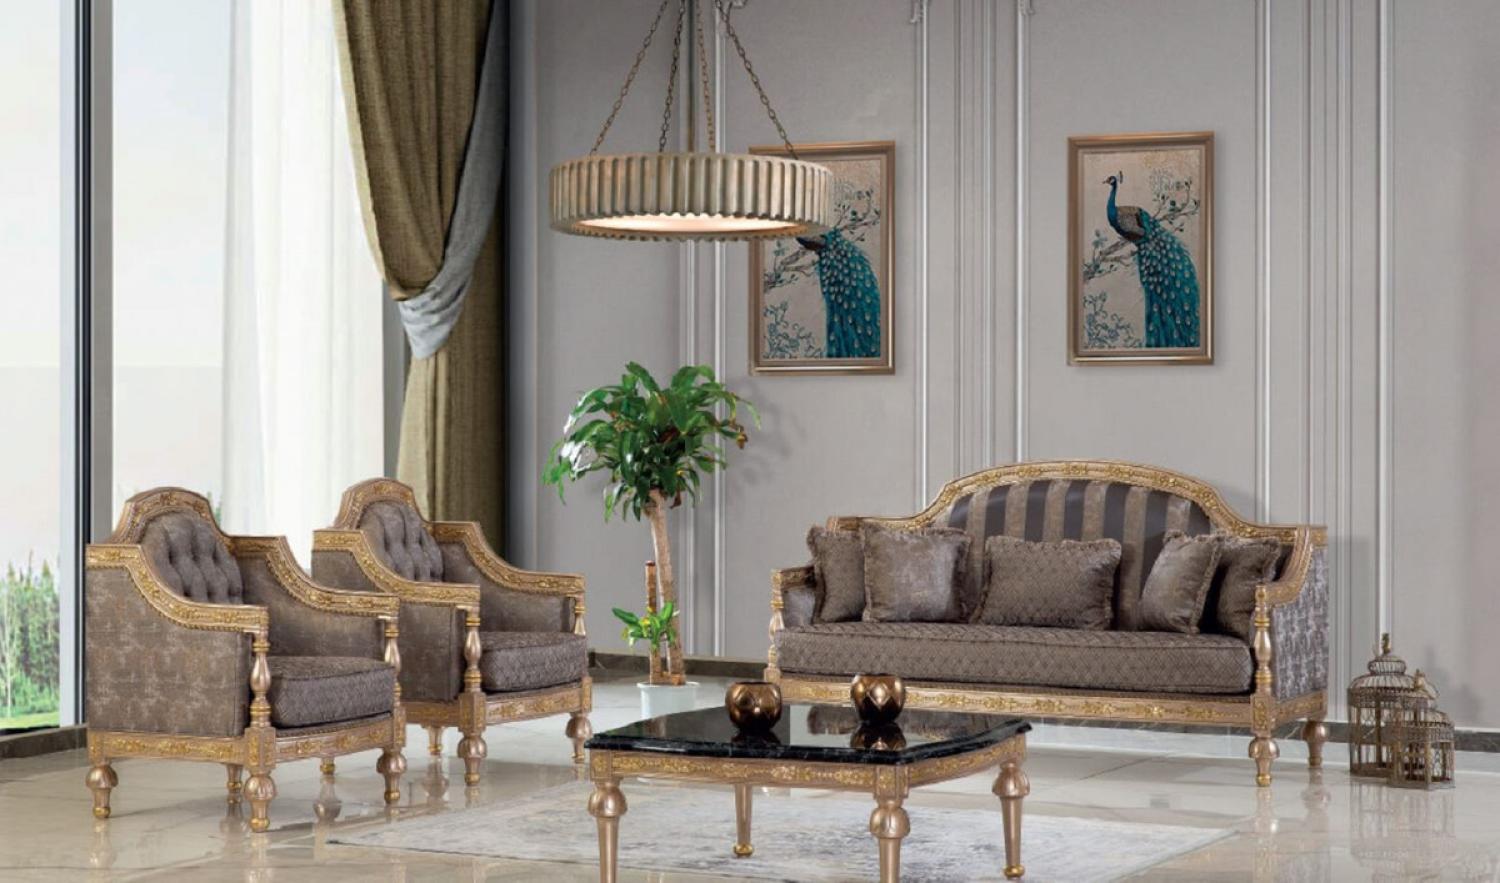 Casa Padrino Luxus Barock Wohnzimmer Set Grau / Silber / Gold - 2 Sofas & 2 Sessel & 1 Couchtisch - Handgefertigte Wohnzimmer Möbel im Barockstil - Edel & Prunkvoll Bild 1